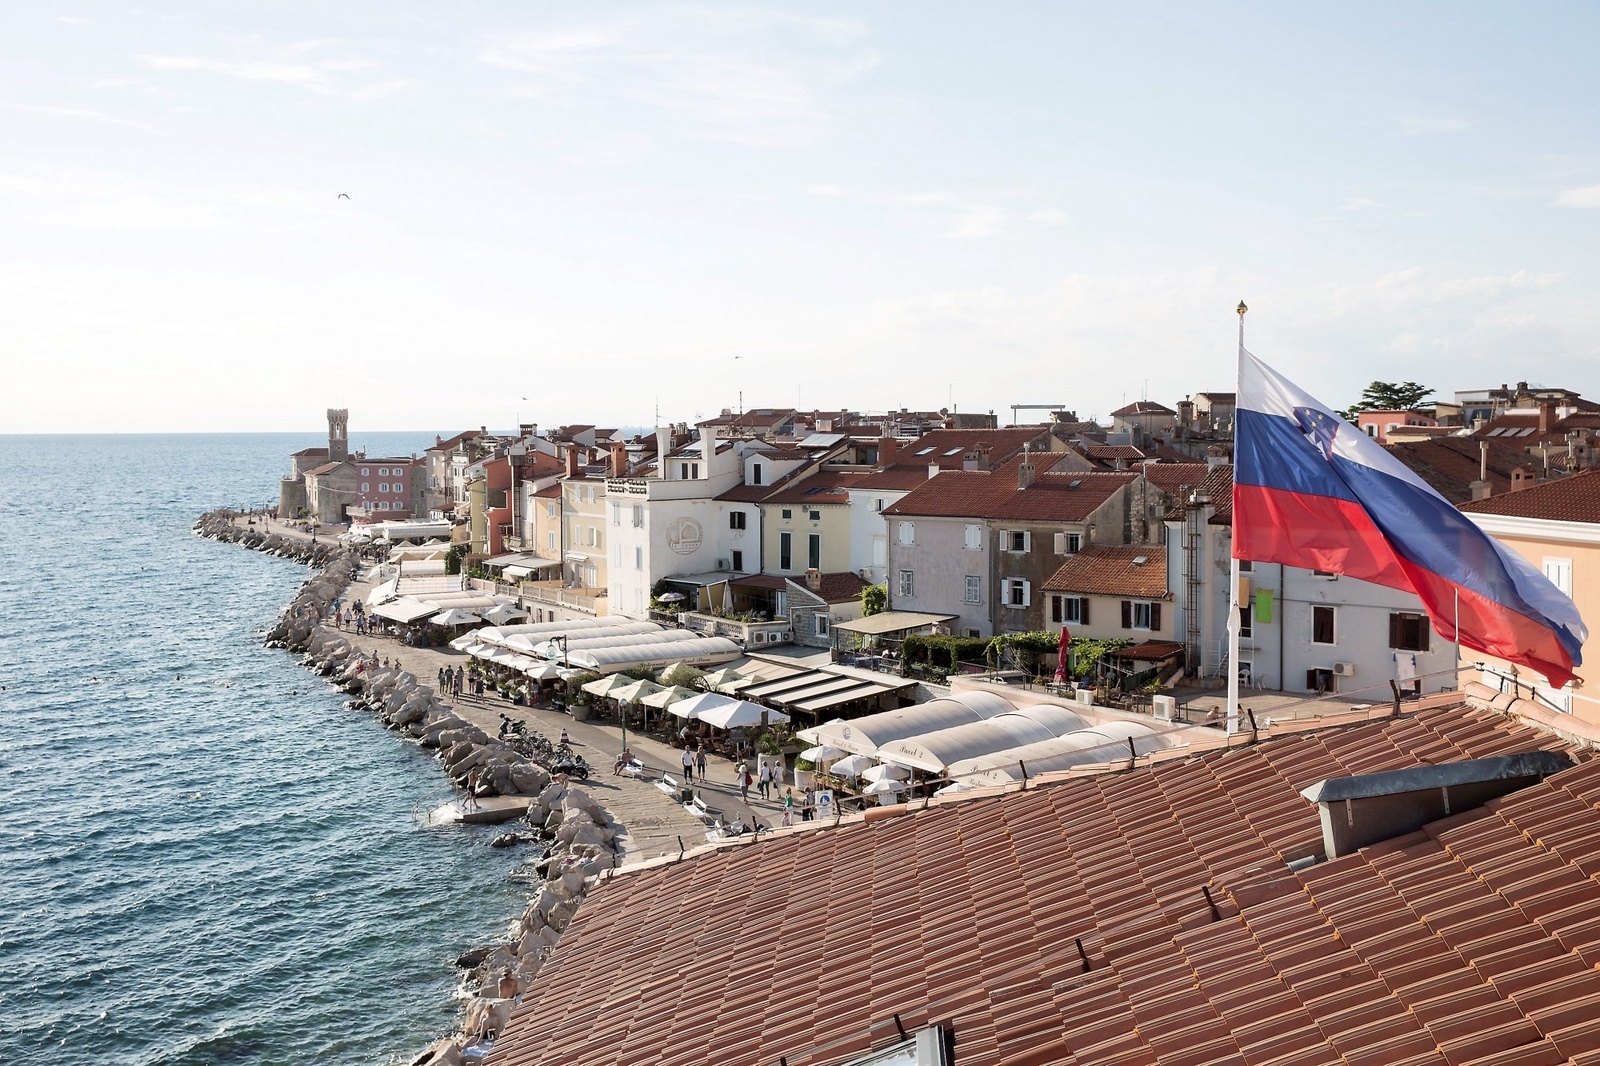 Hamnpromenaden i Piran kantas av restauranger och kaféer.
Foto: Annika Goldhammer